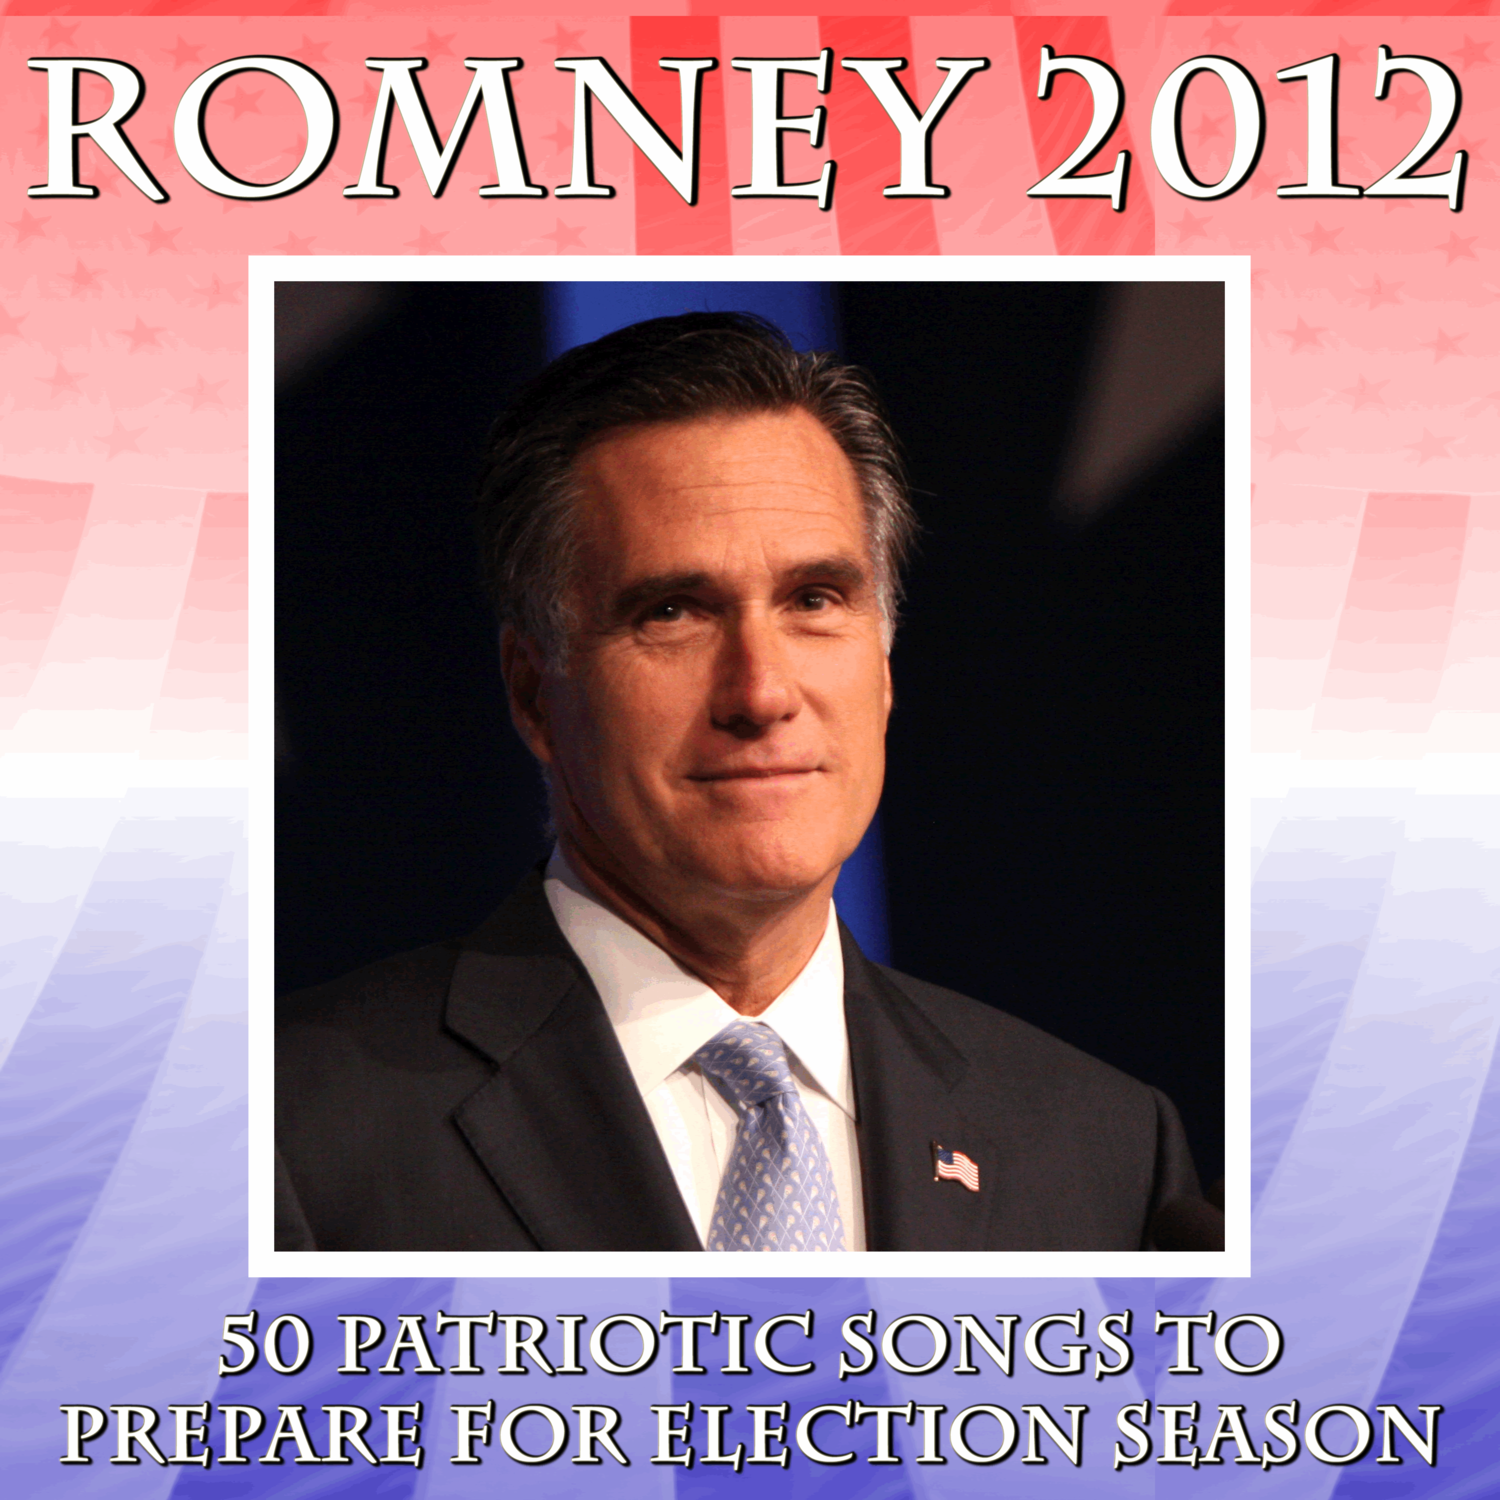 Romney 2012: 50 Patriotic Songs to Prepare for Election Season